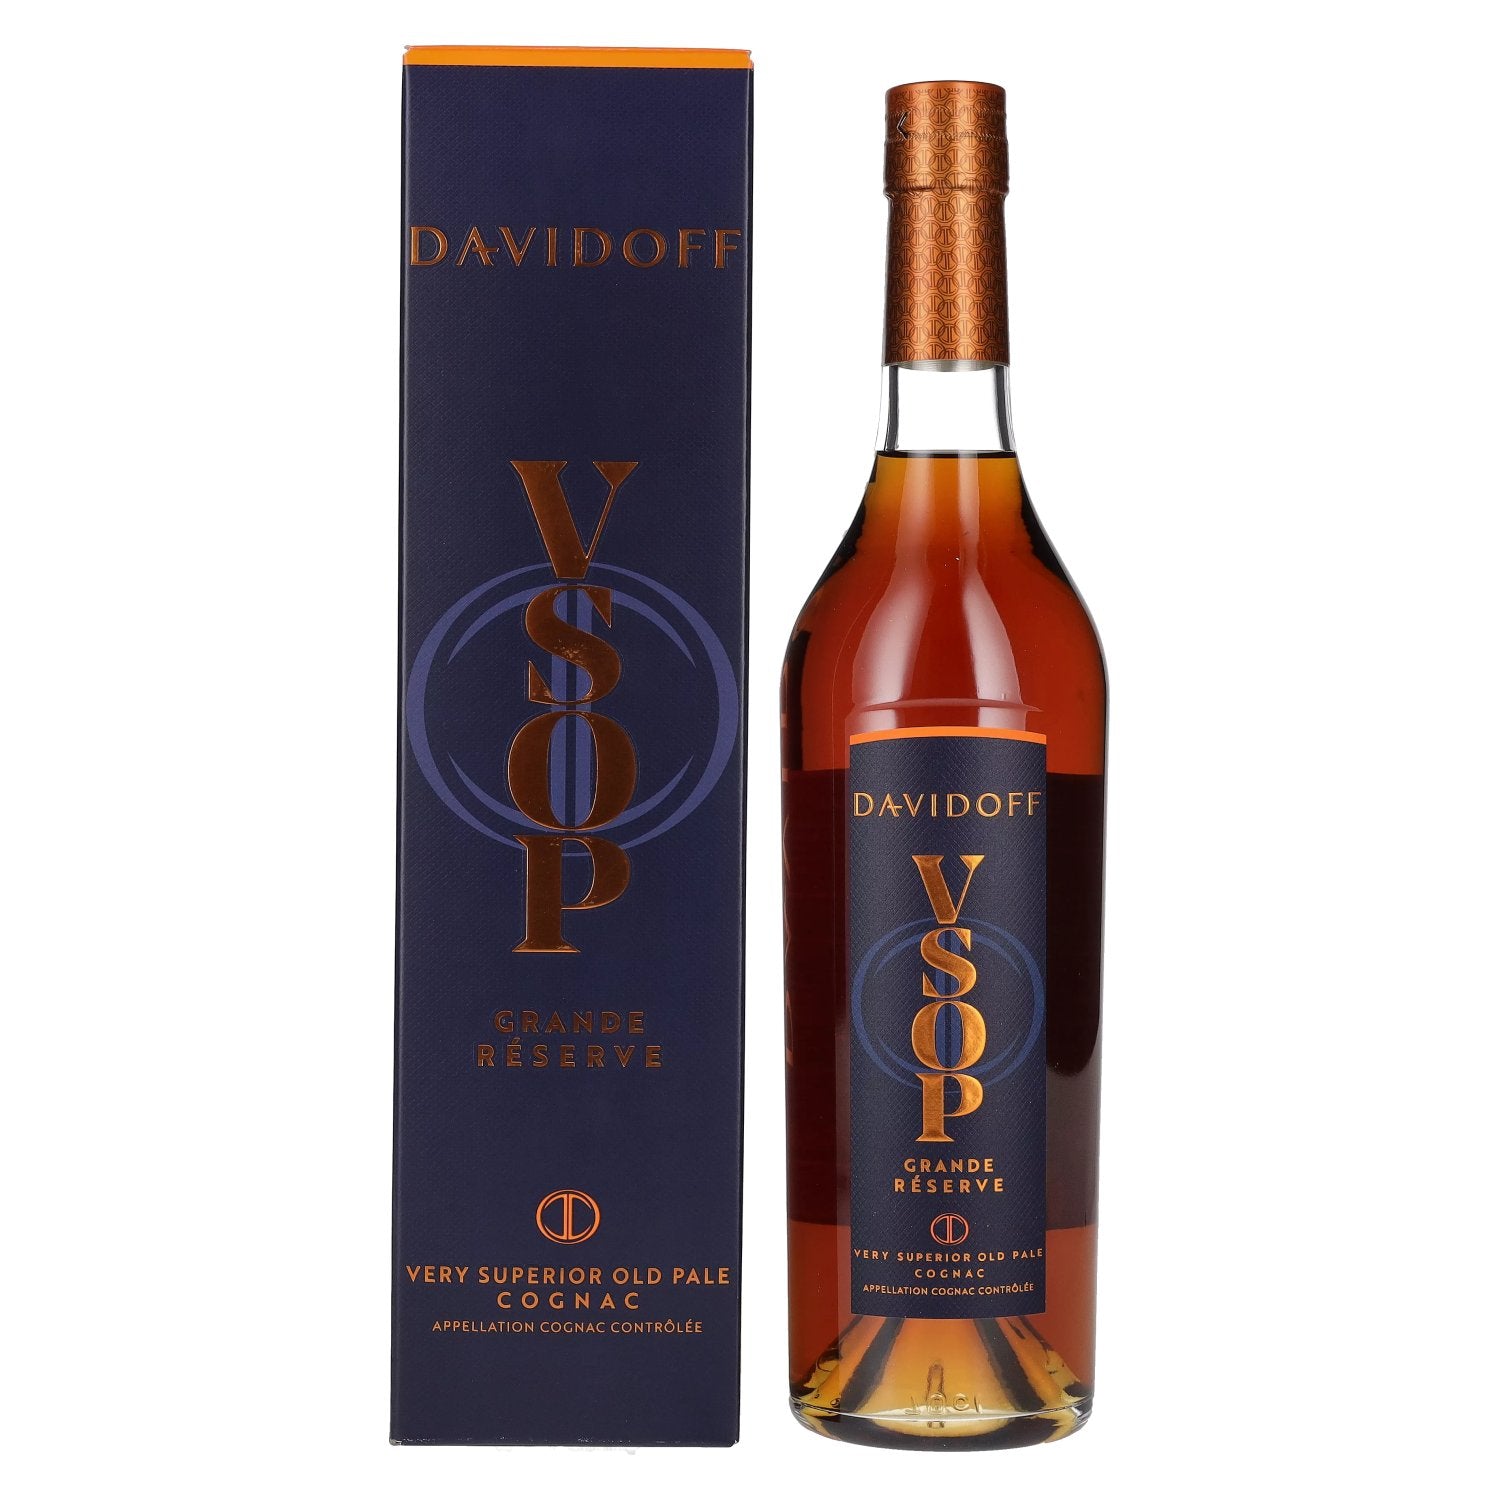 Davidoff VSOP Grande Reserve Cognac 40% Vol. 0,7l in Giftbox